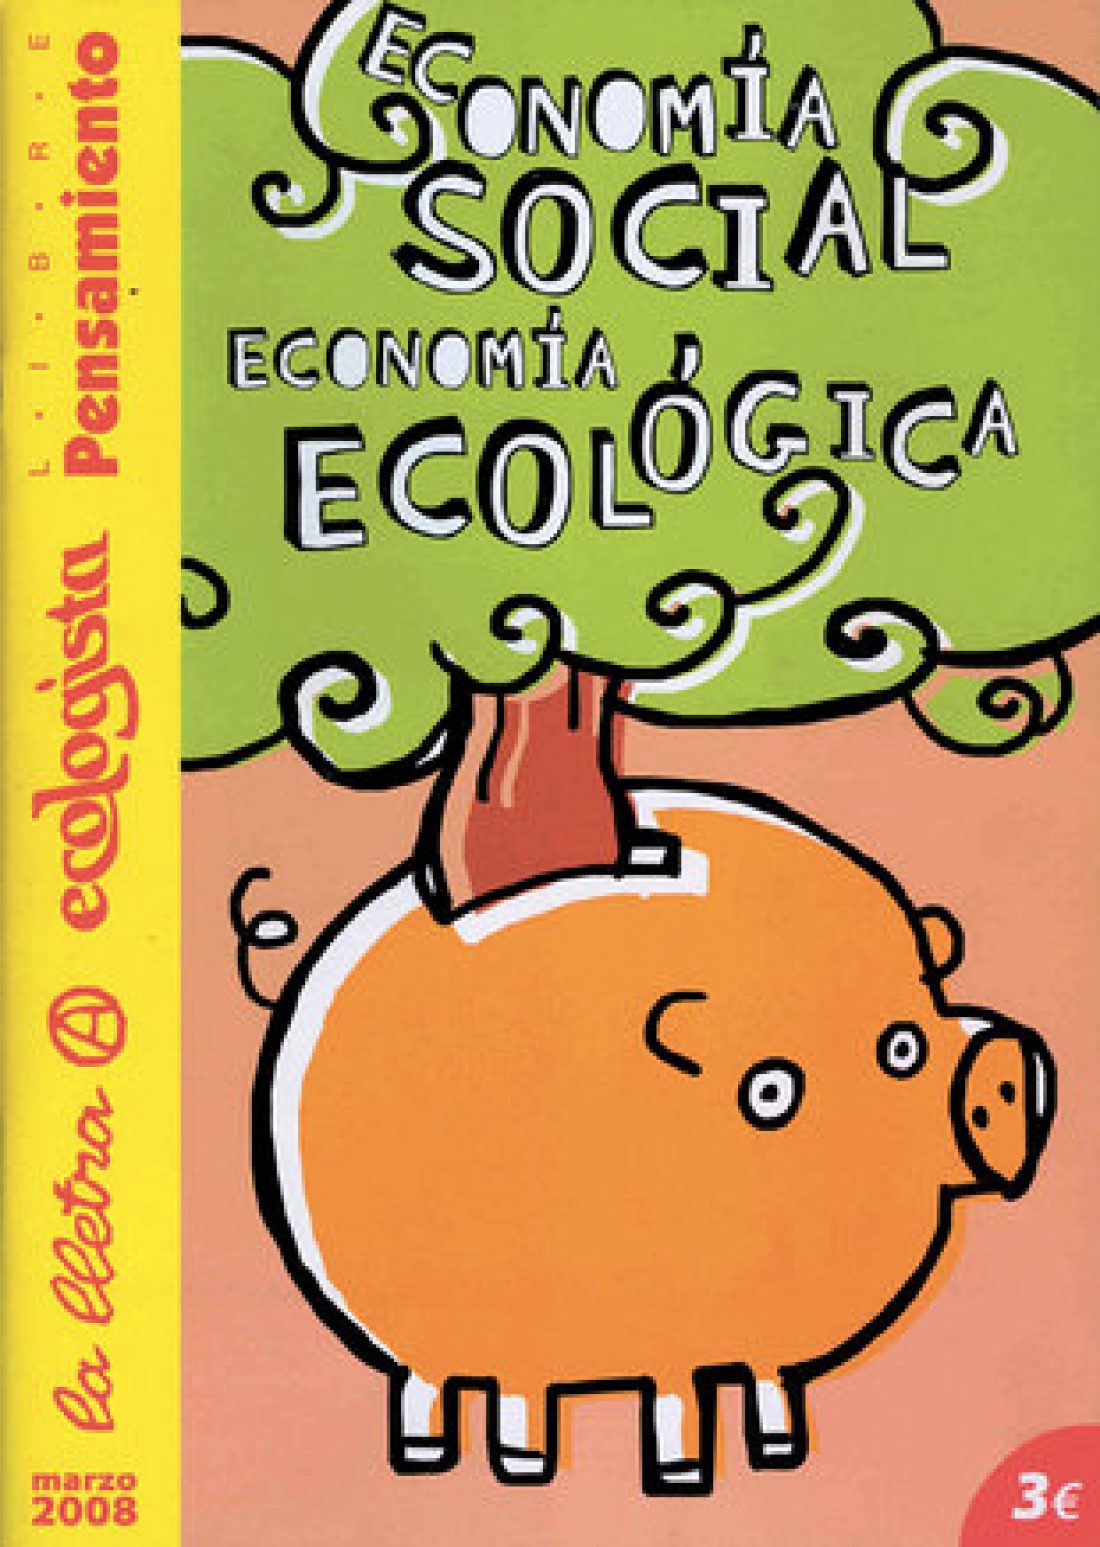 Libre Pensamiento (nº extra Marzo 2008) «Economía Social. Economía Ecológica»